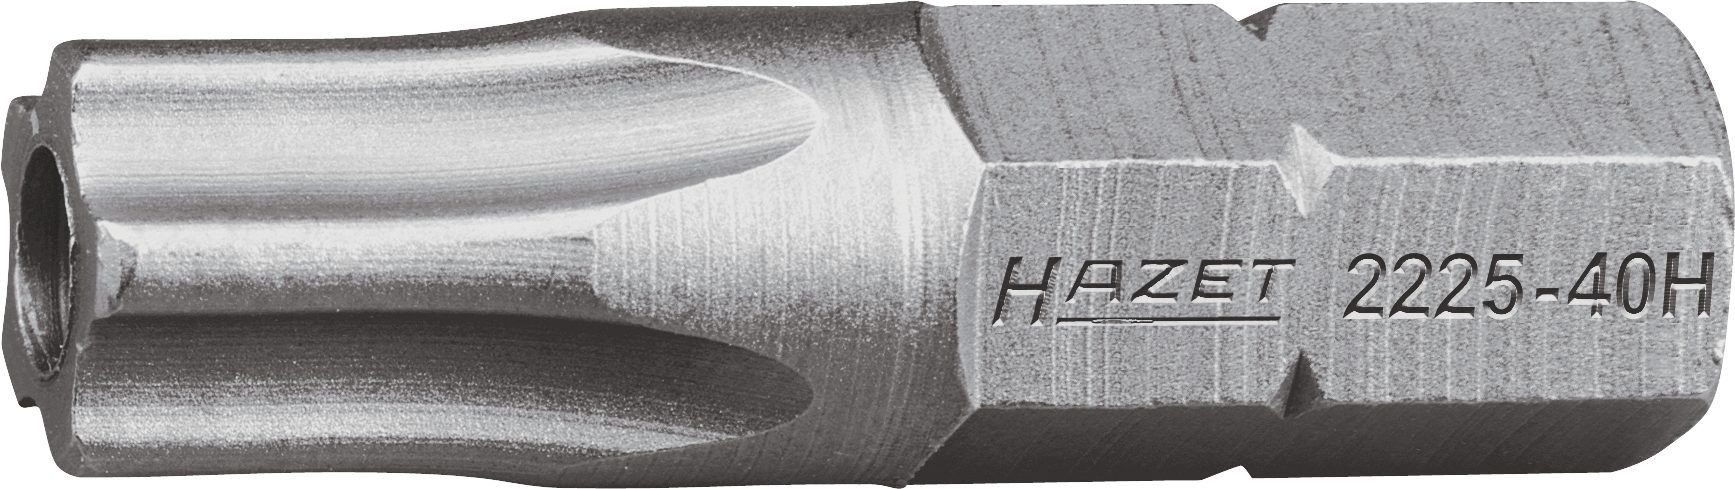 HAZET Bit-Set Hazet 5-Stern-Schraubendr.-Einsatz (Bit), 2225-15H